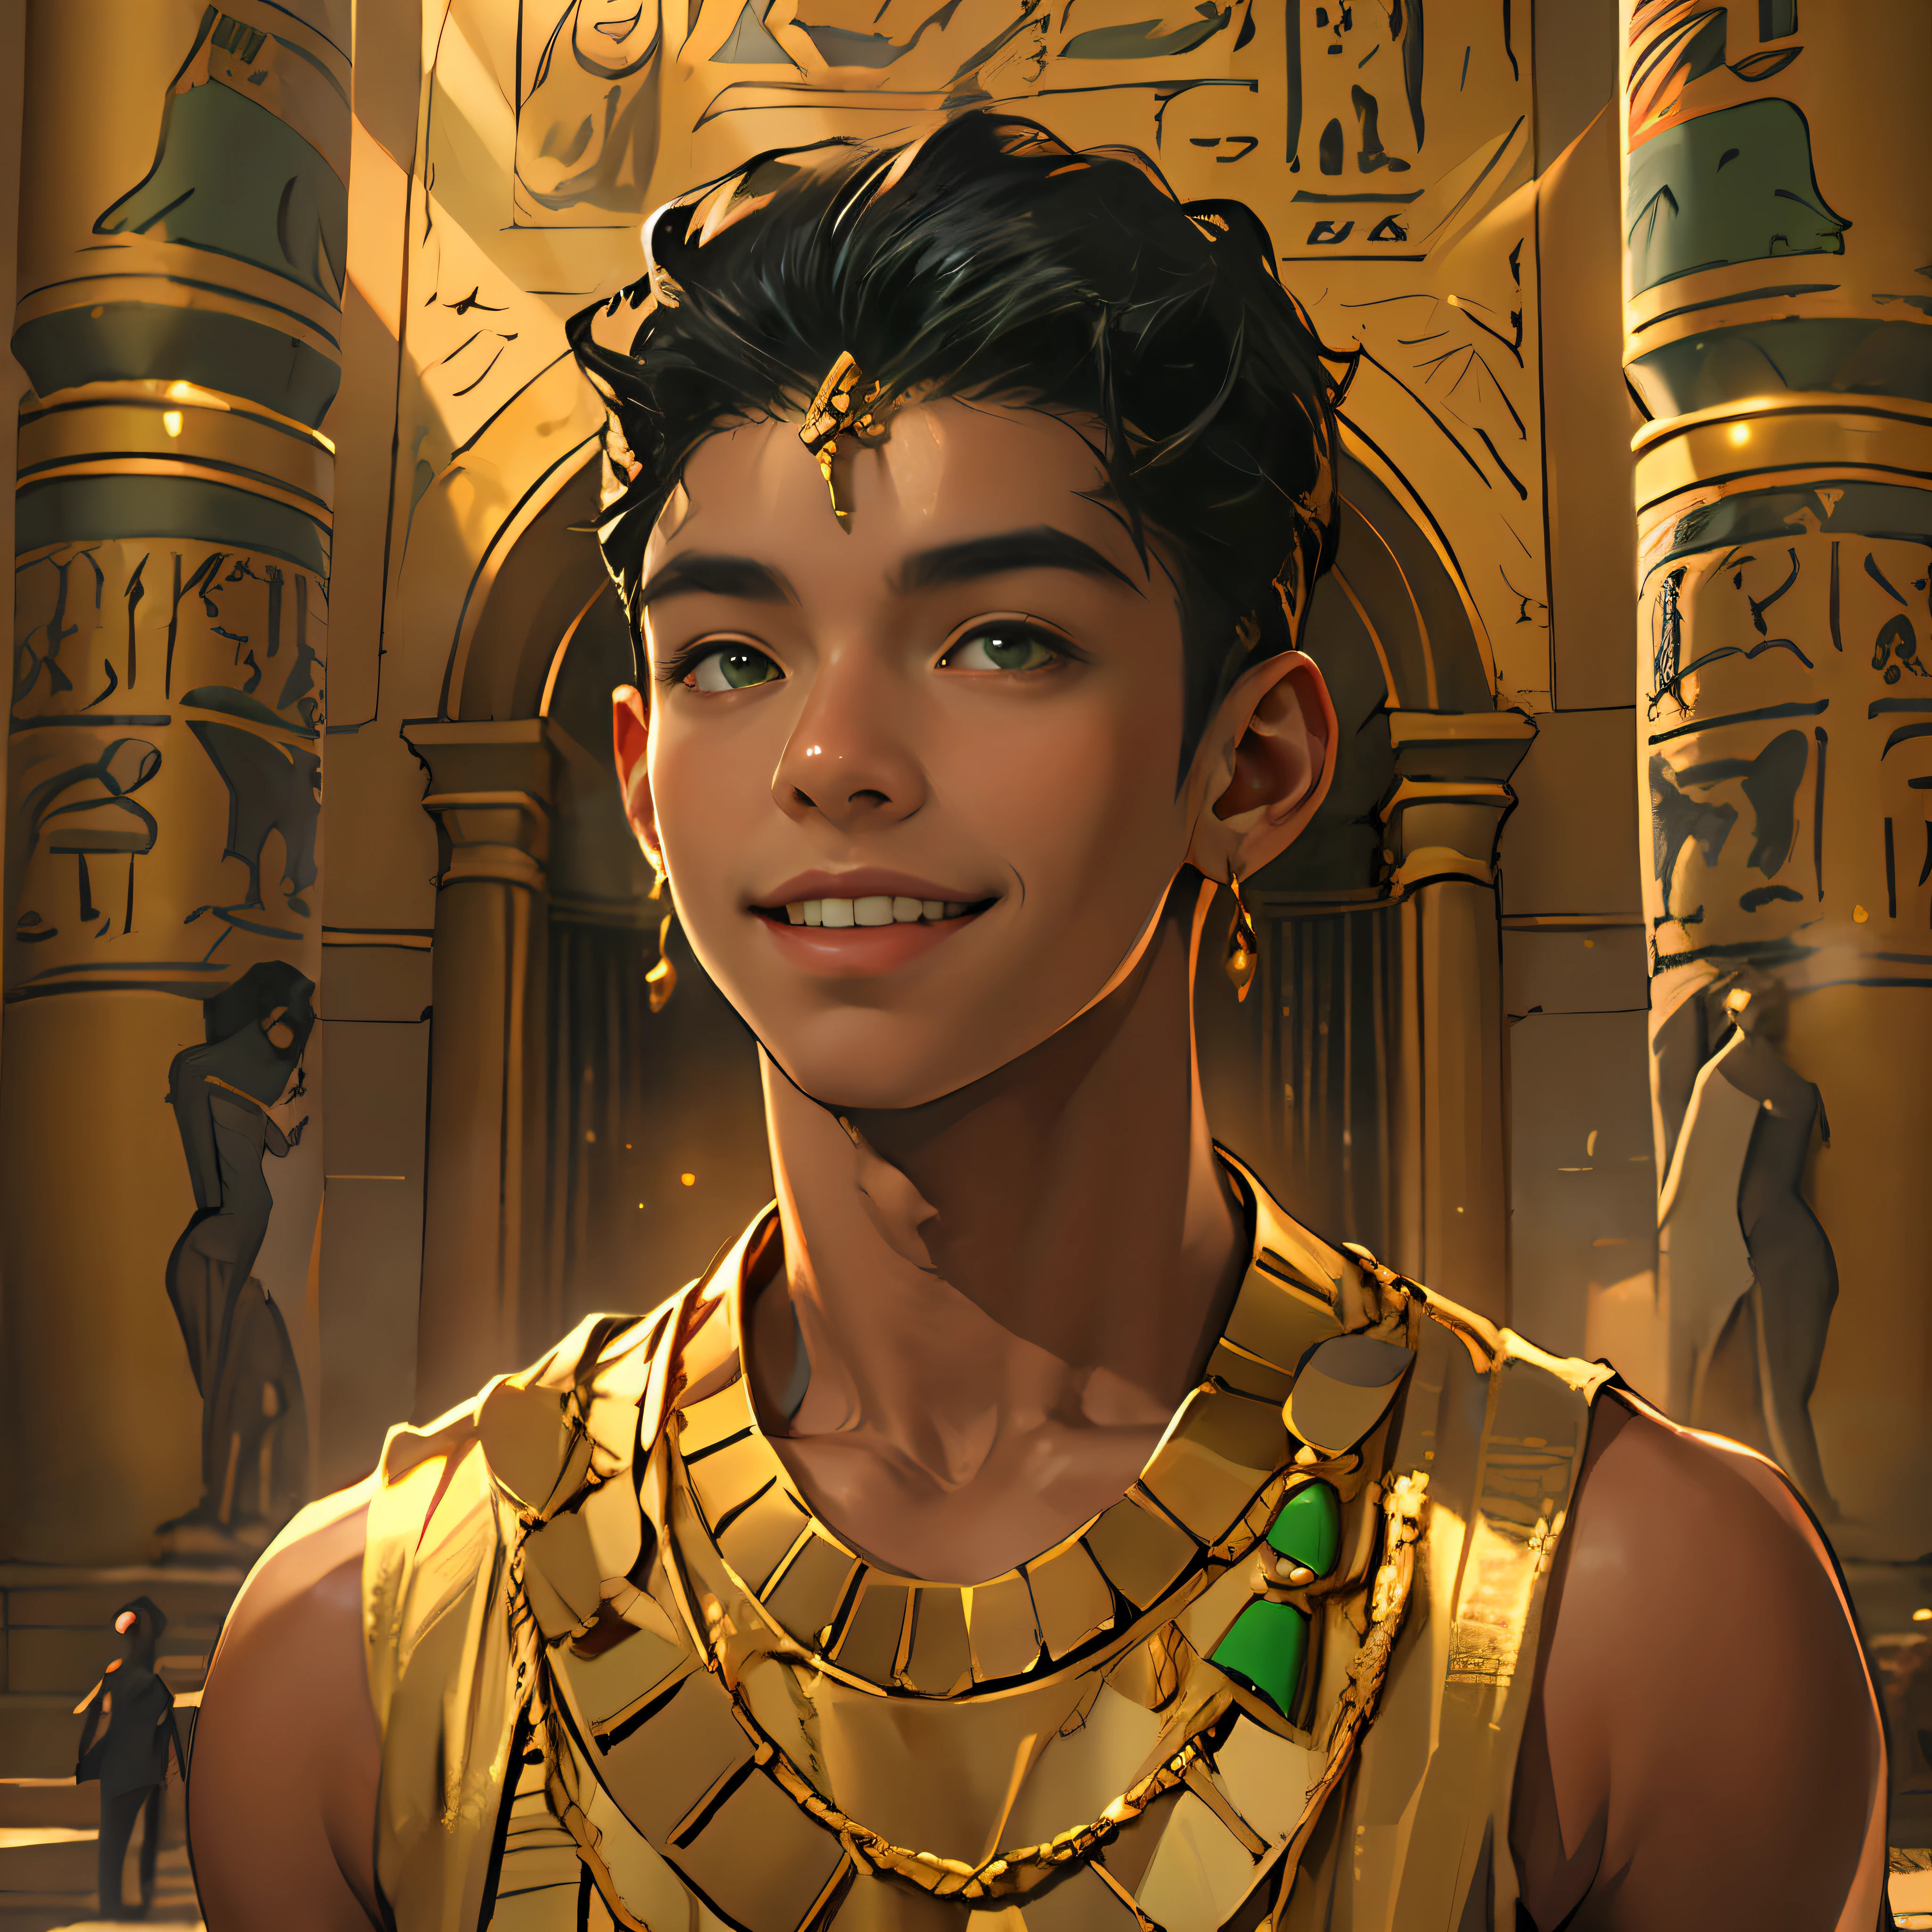 صبي يبلغ من العمر 15 عامًا يمشي مبتسمًا في قصور مصر القديمة، شعر أسود، بشرة بنية، عيون خضراء، ملابس سوداء أنيقة مع ذهب، صدر عاري، يرتدي مجوهرات من الذهب الأحمر.